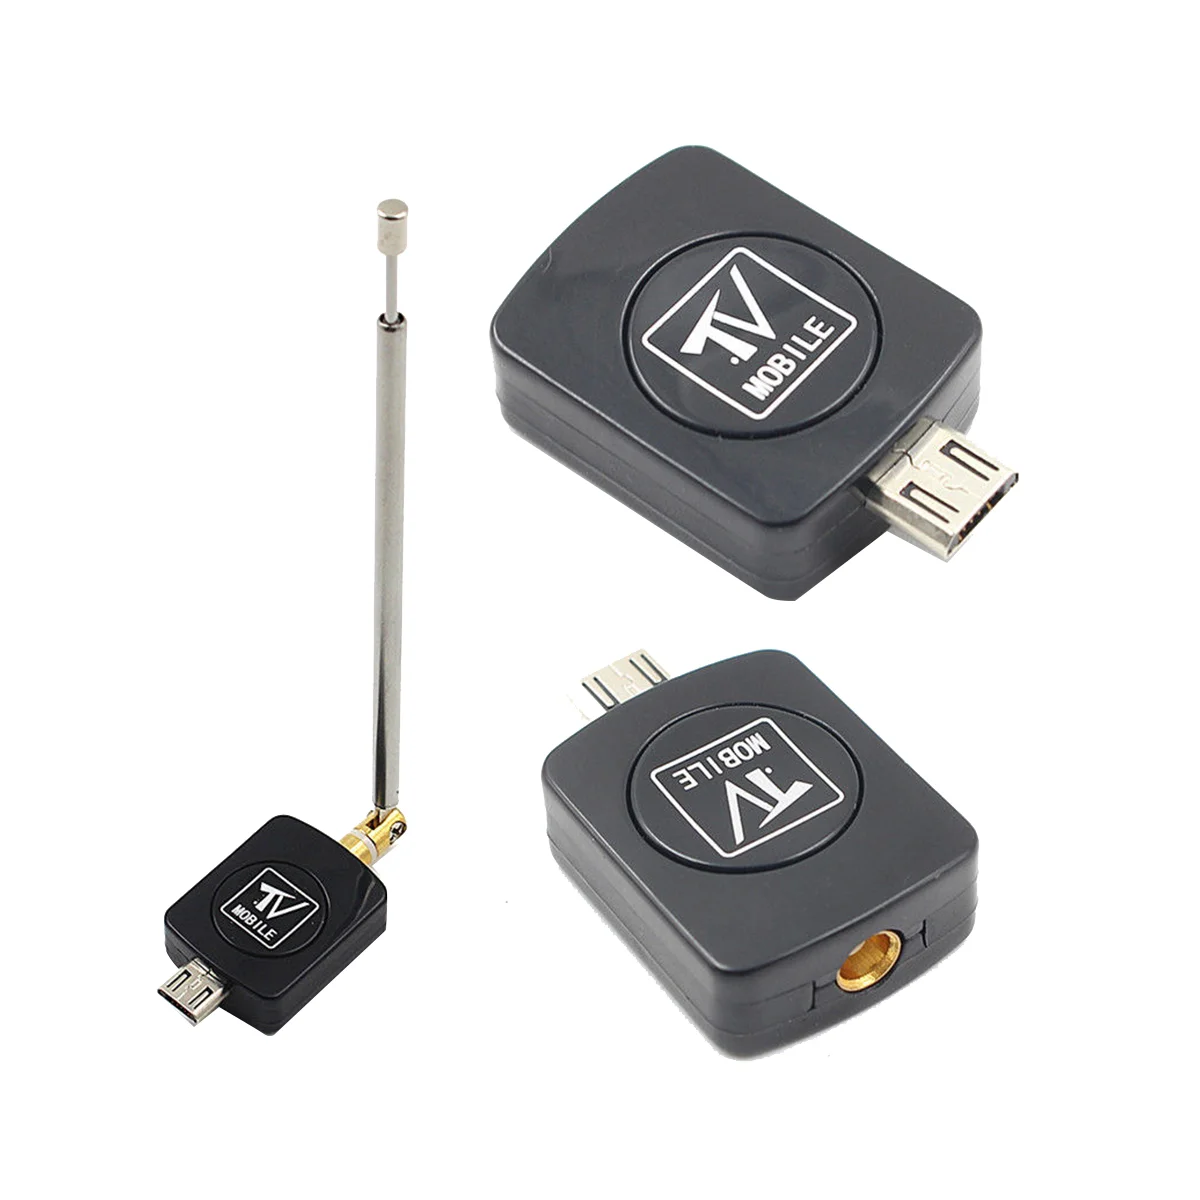 Mini USB DVB-T טיונר טלוויזיה מקלט דונגל/אנטנה DVB-T HD דיגיטלי נייד טלוויזיה HDTV הלוויין עבור טלפון אנדרואיד - 2